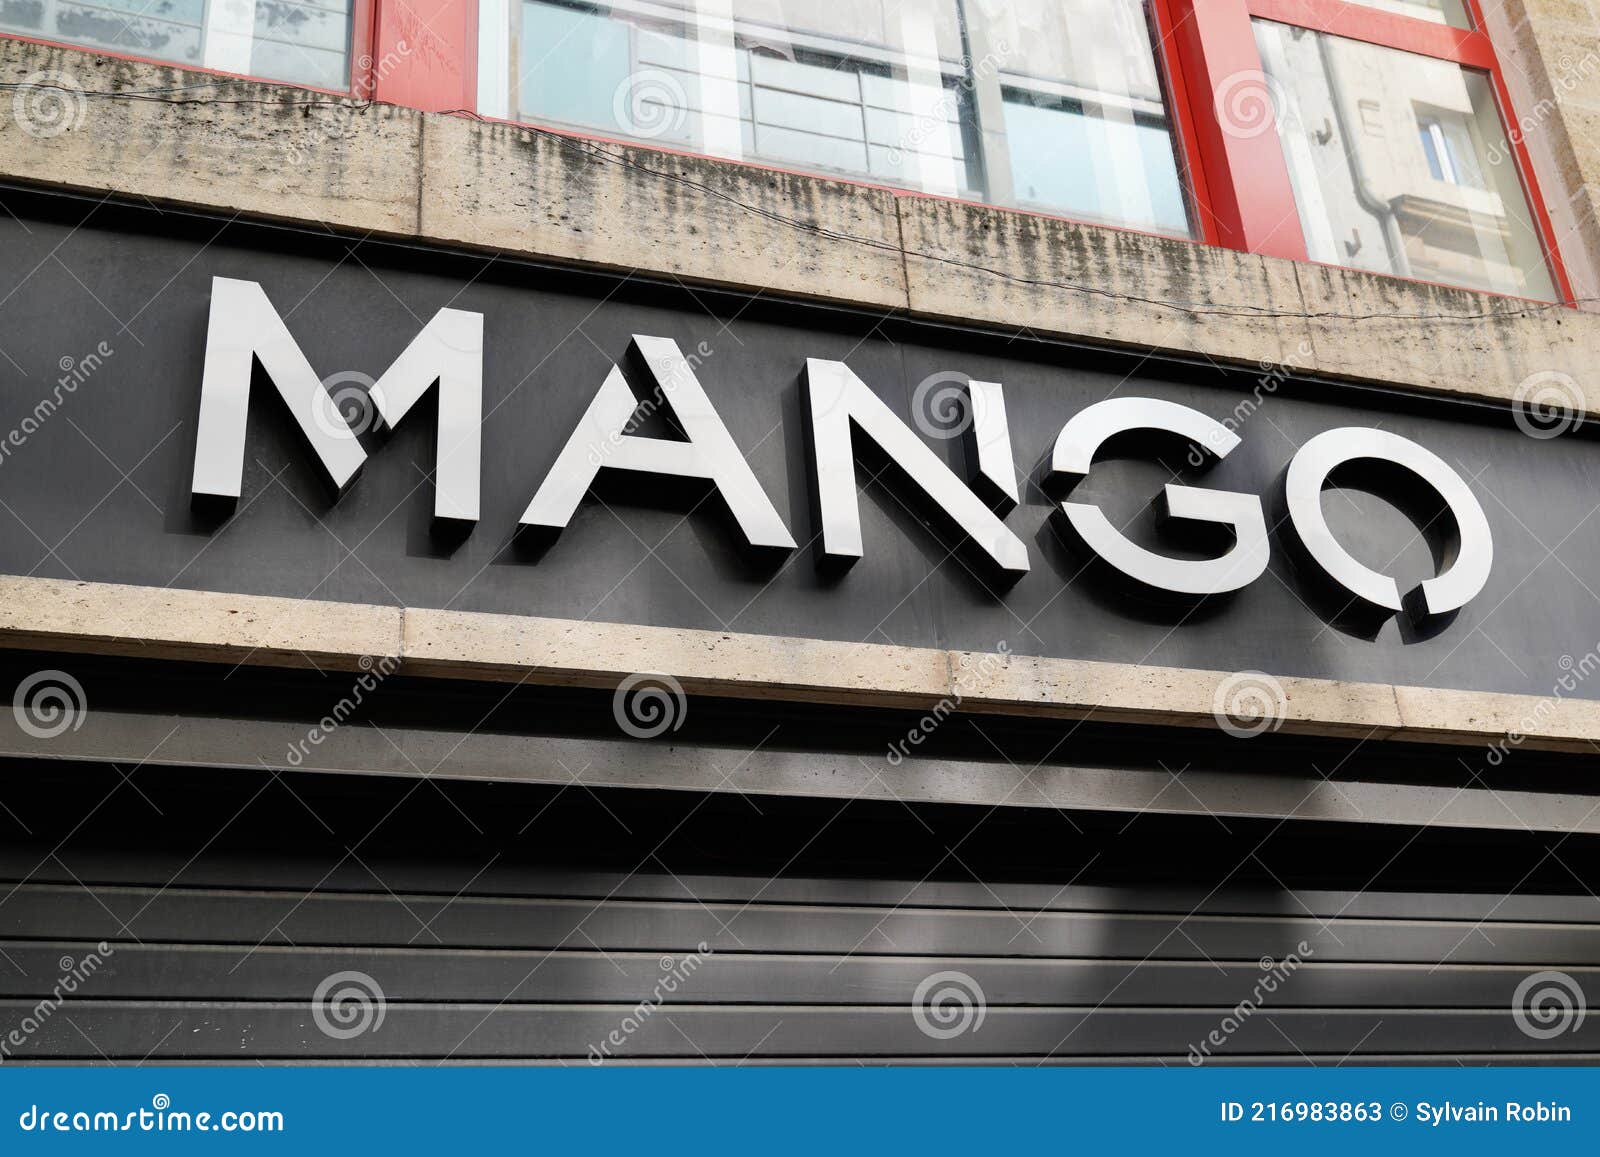 Mango Texto Signo Y Logo Marca Frente De Tienda Moda De Ropa De Foto de archivo Imagen de entrada, departamento: 216983863